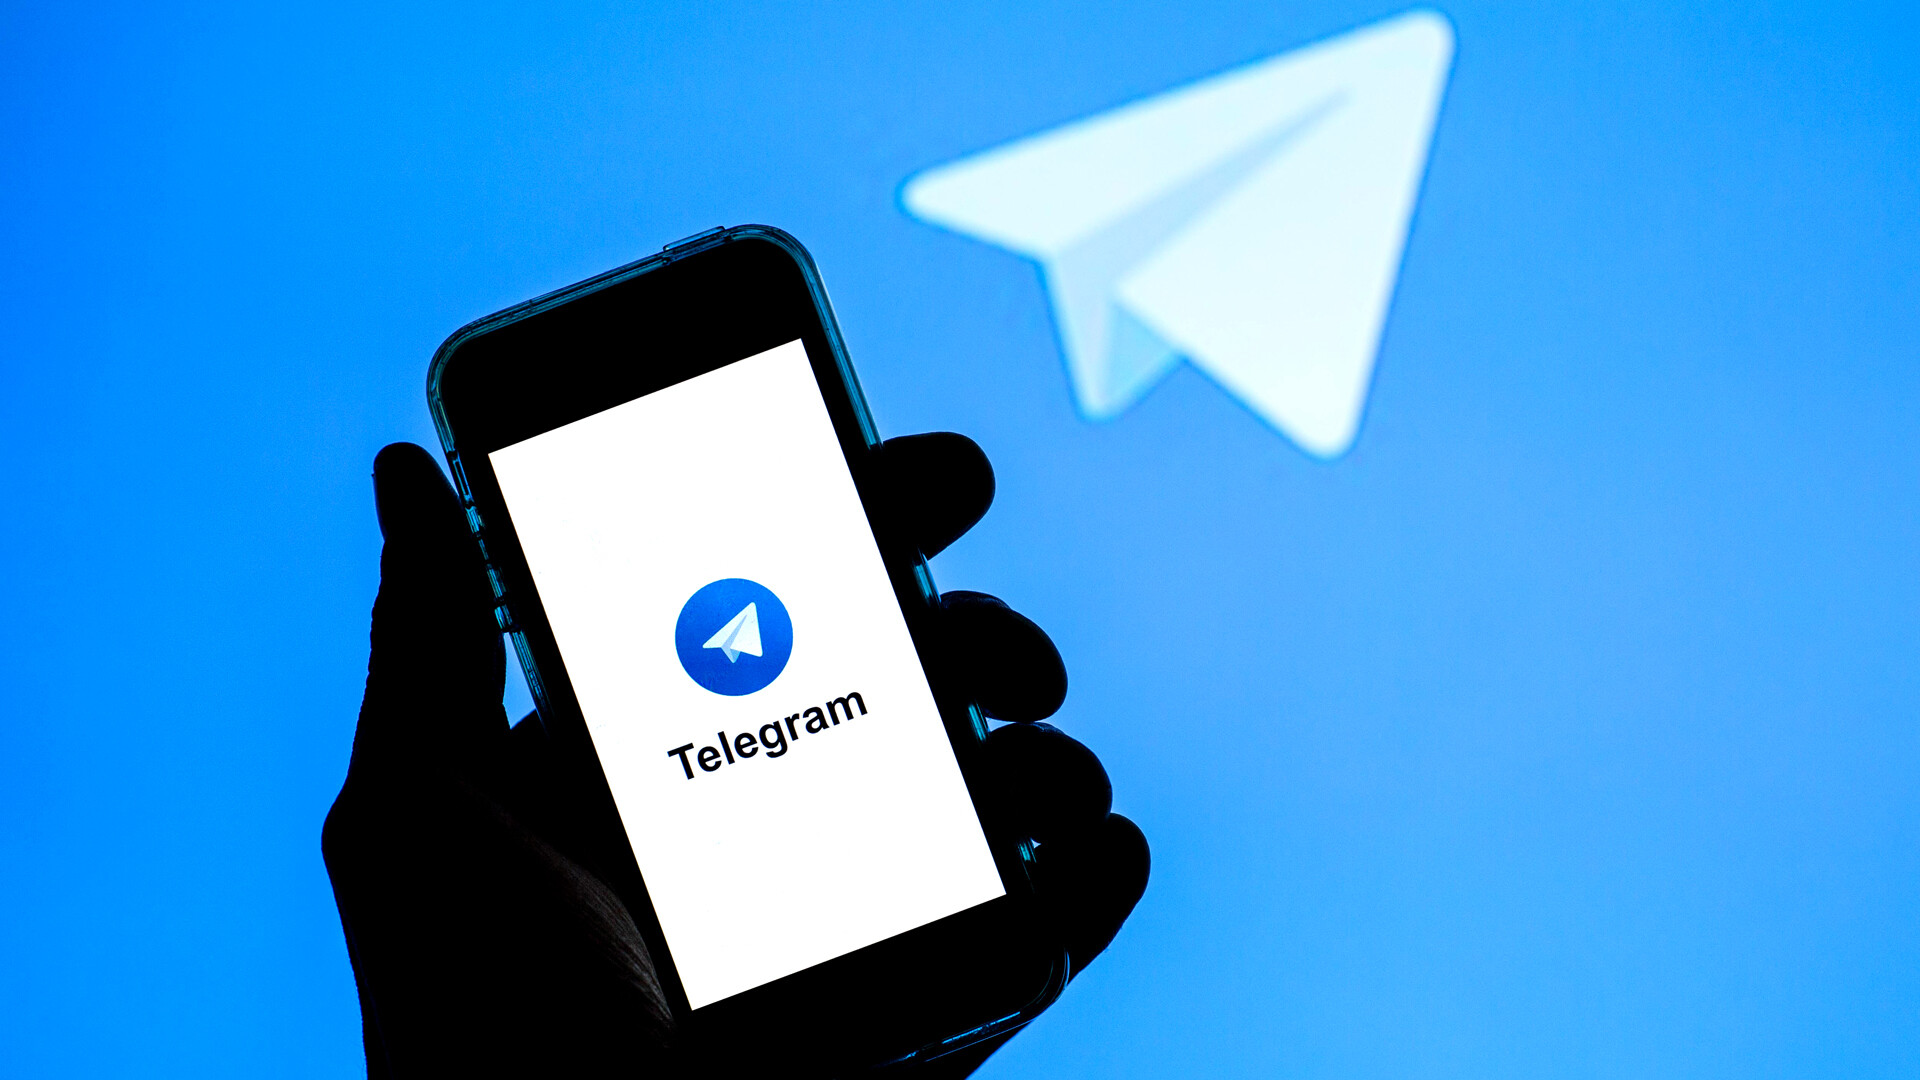 Скачать приложение телеграмм на русском языке на андроид бесплатно и установить без рекламы фото 114